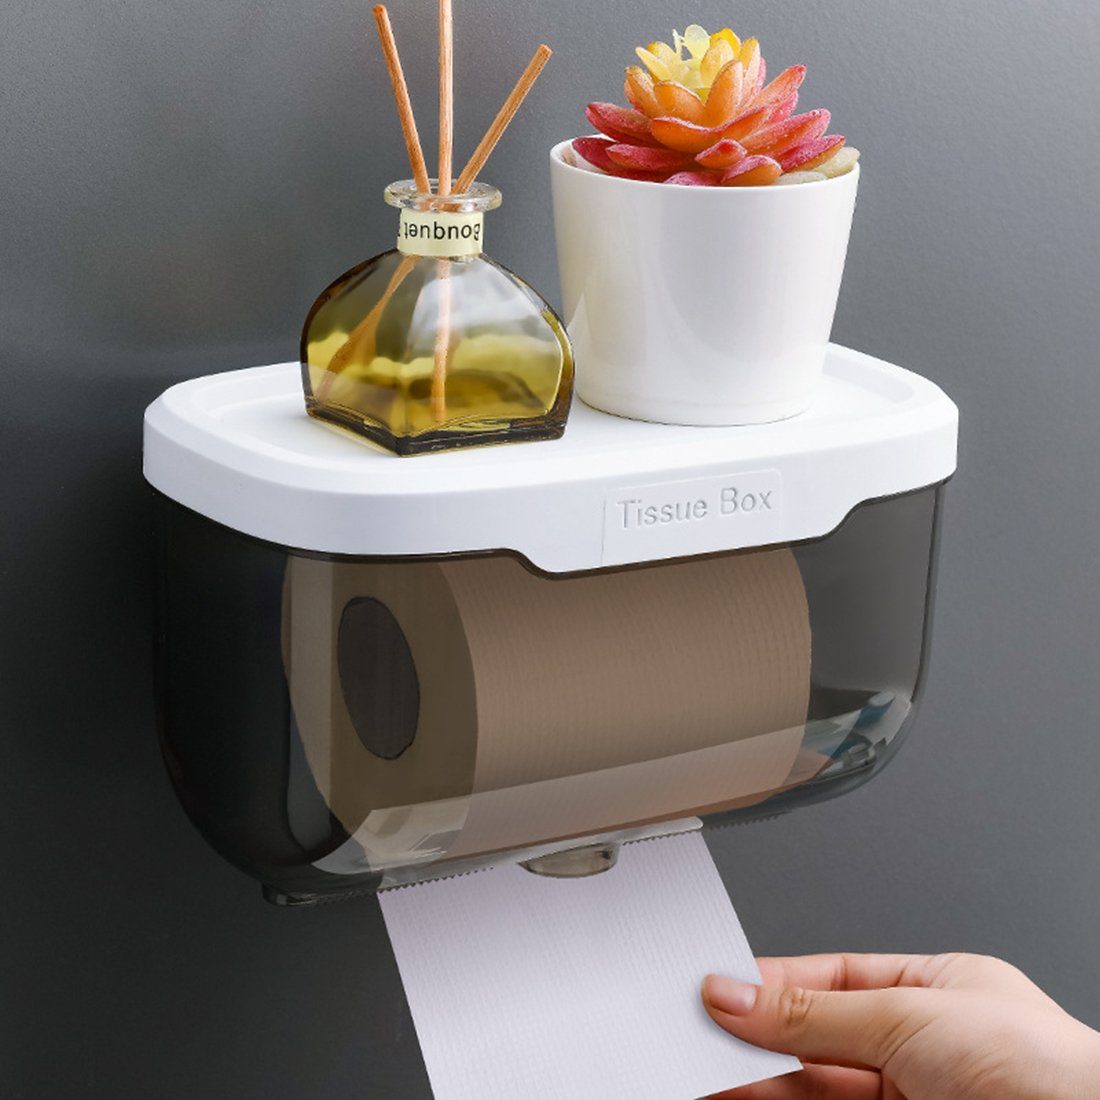 Haiaveng Toilettenpapierhalter Toilettenpapierhalter,Wandmontierte Tissue-Box,Duschablage, ohne Bohren, Papierhalter Klopapierhalter